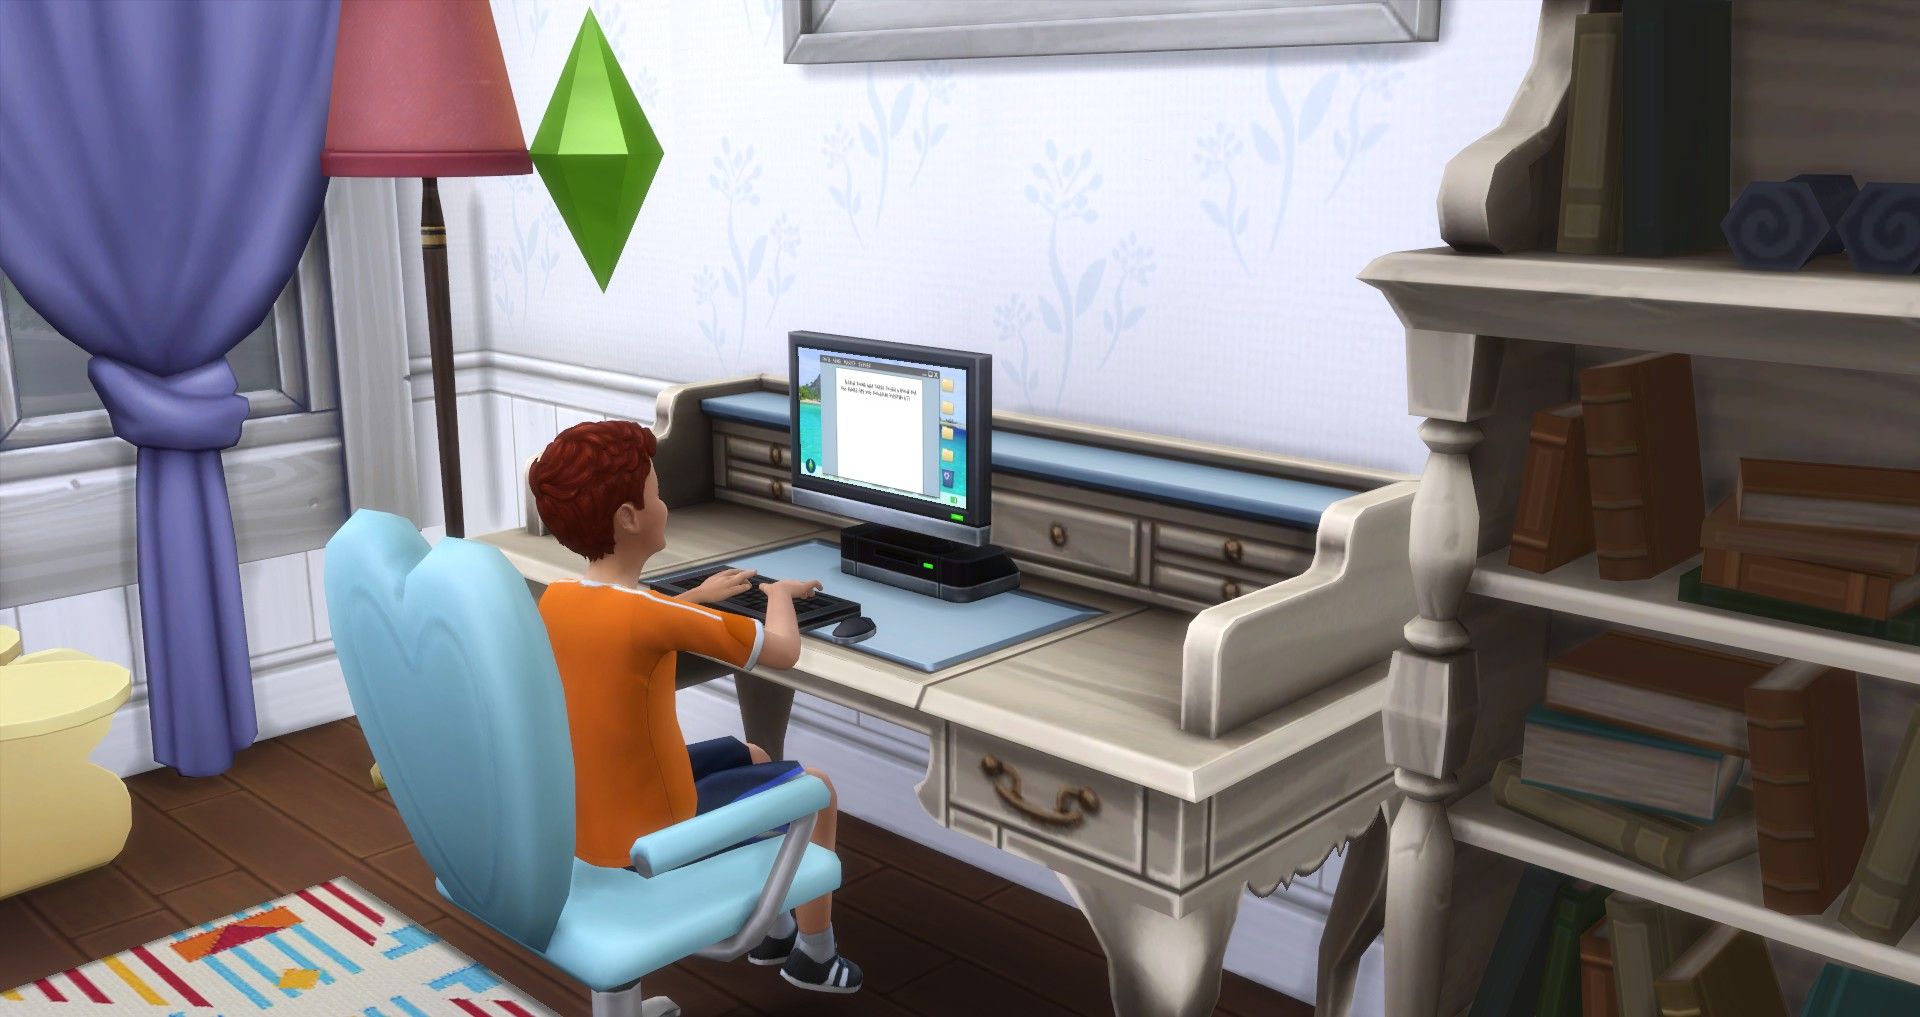 Ein Kindersimulator, der das Tippen am Computer übt und die motorischen Fähigkeiten von Sims 4 übt